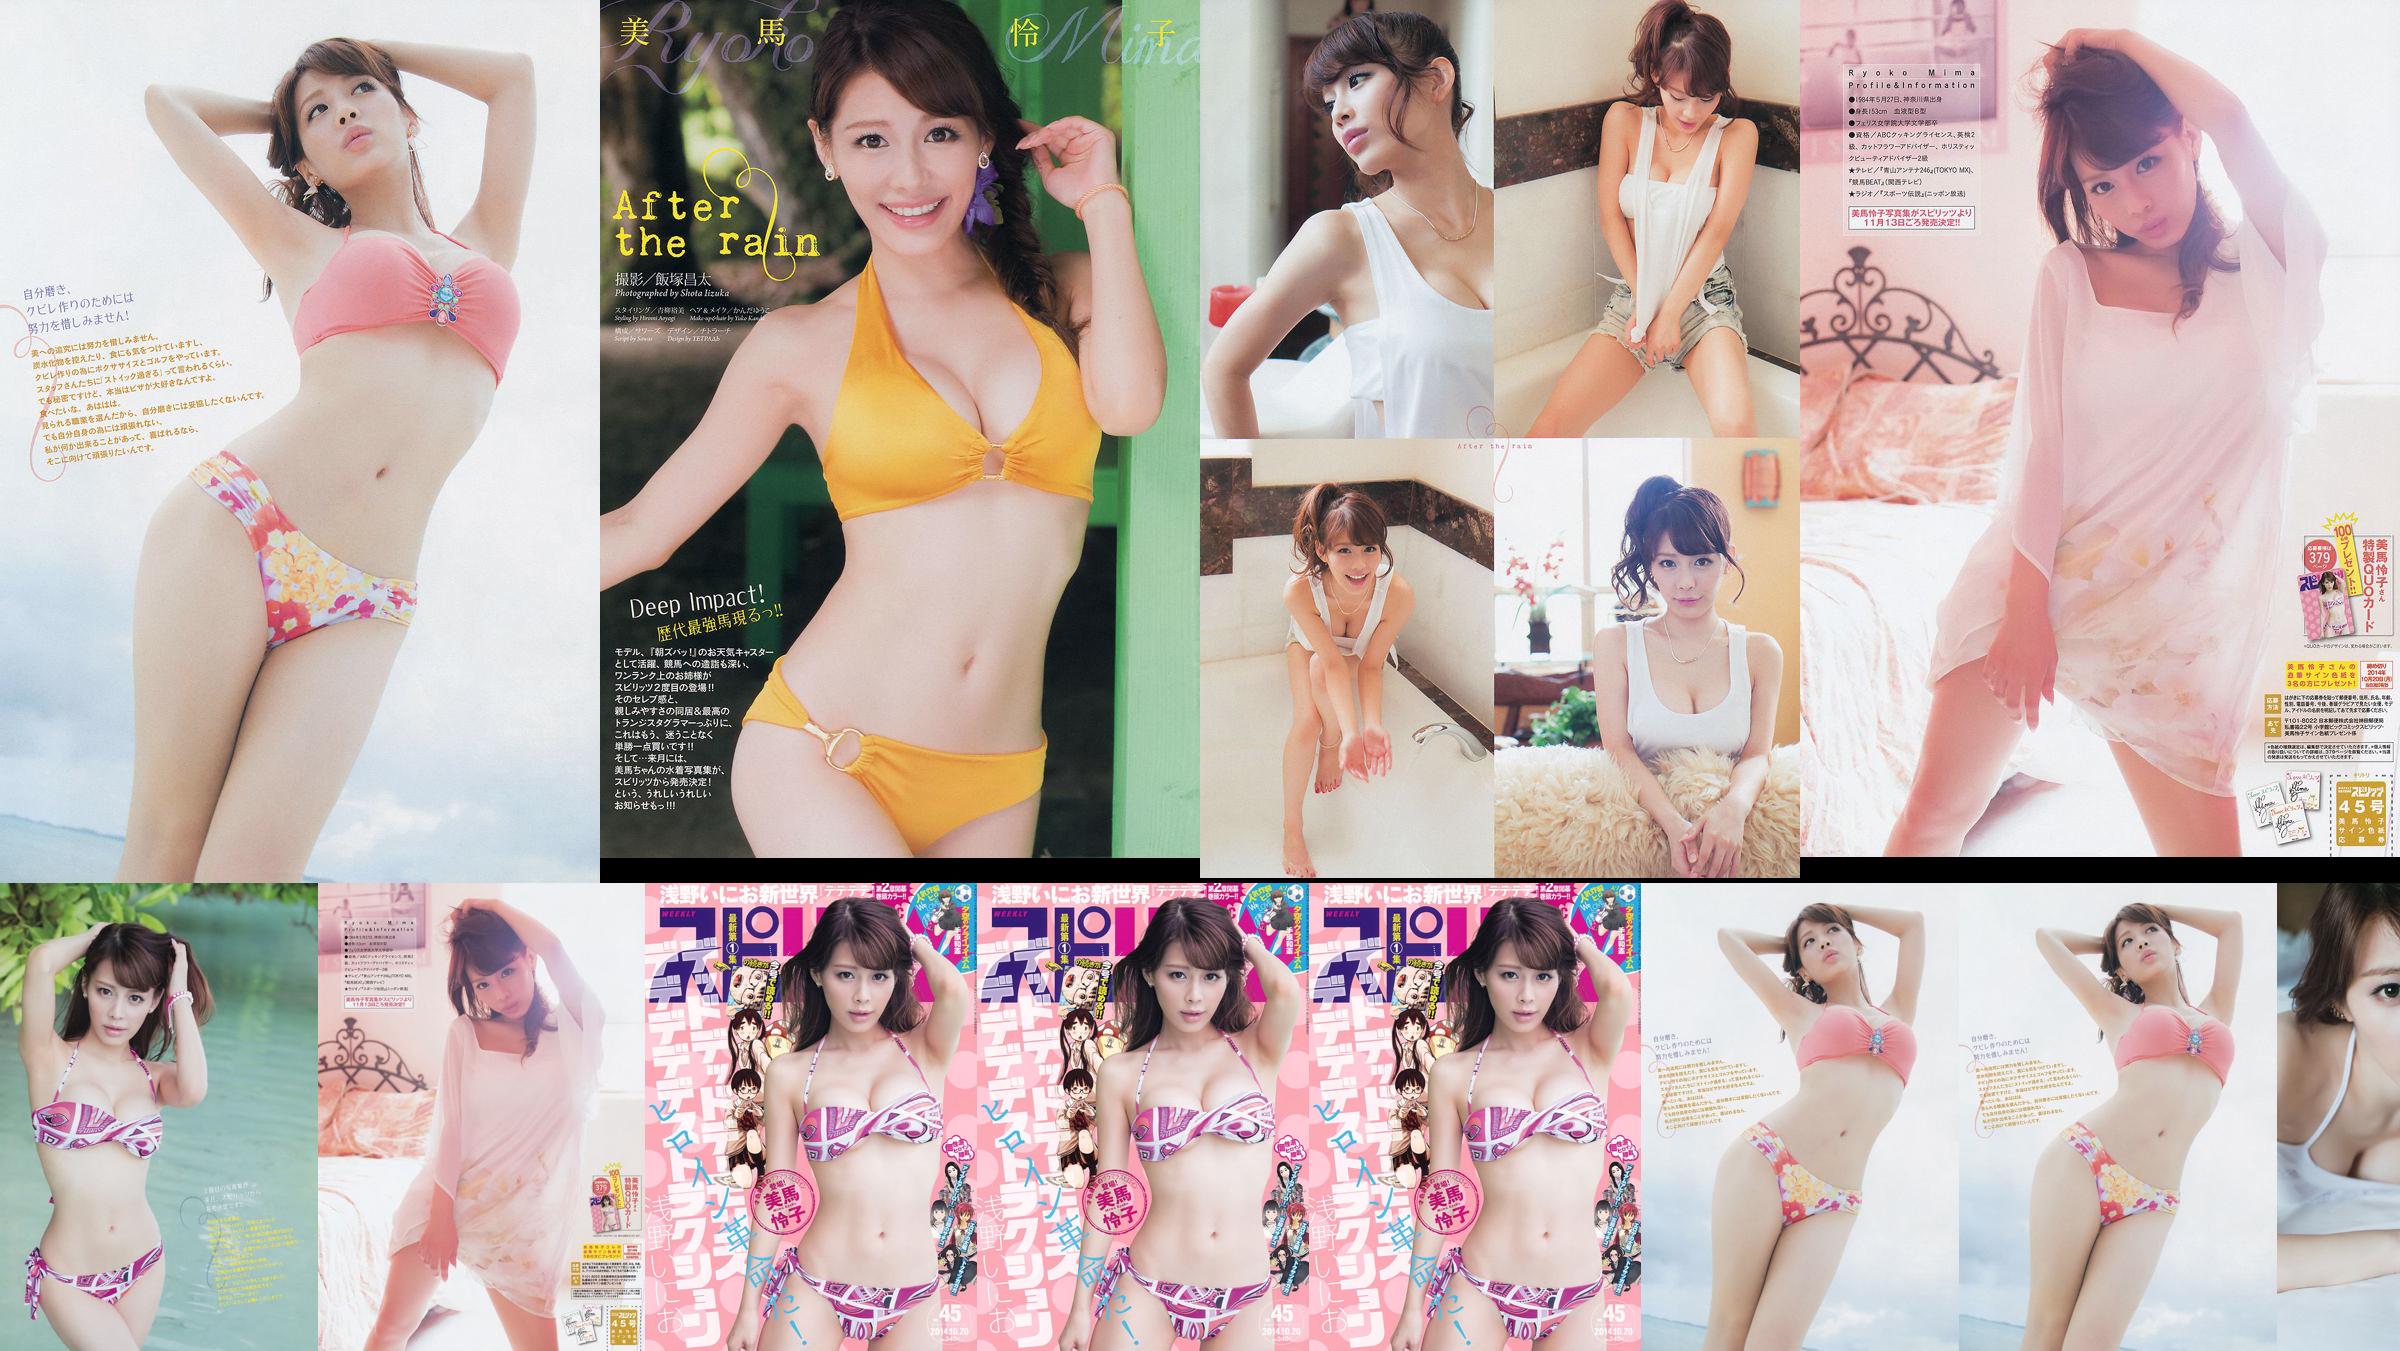 [Semangat Komik Besar Mingguan] Mima Reiko 2014 Majalah Foto No.45 No.3c3fdc Halaman 2